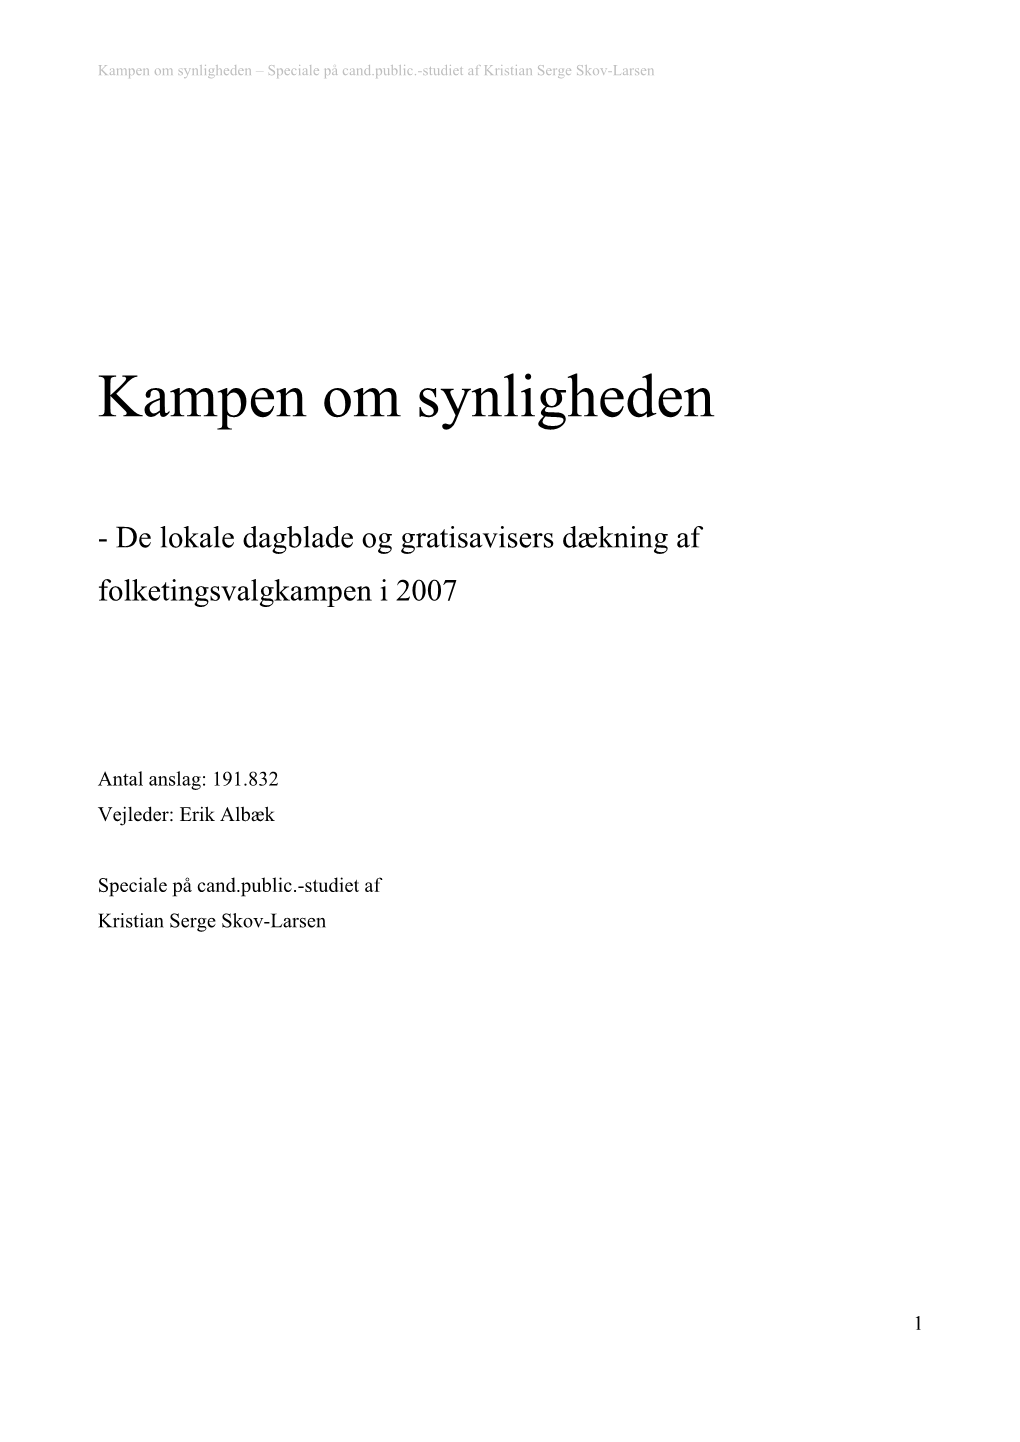 Kampen Om Synligheden – Speciale På Cand.Public.-Studiet Af Kristian Serge Skov-Larsen